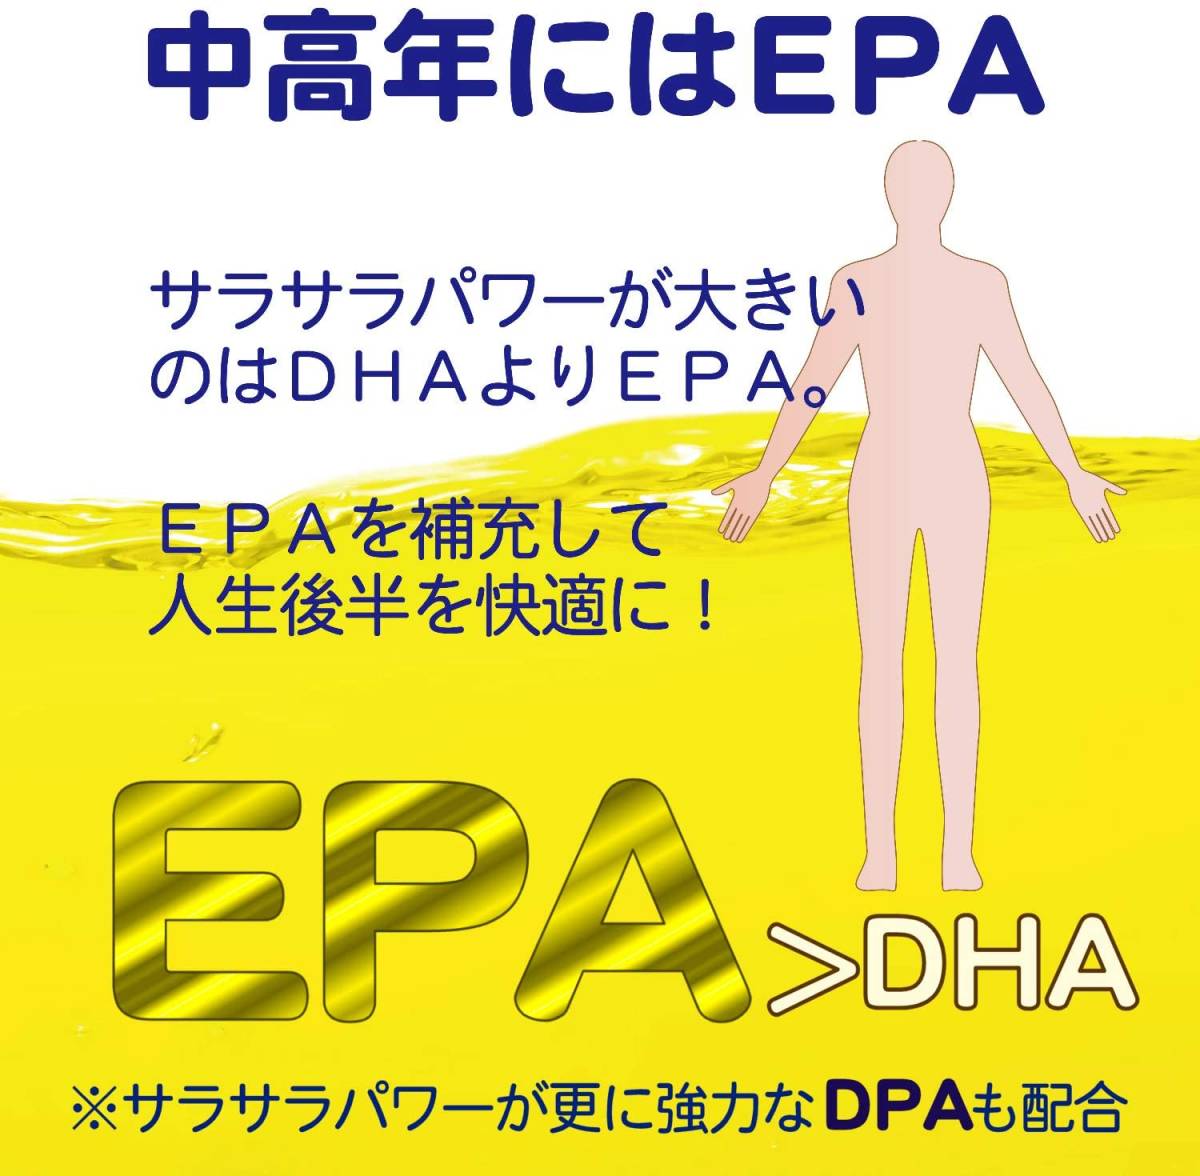 30粒 ロングライフEPA サプリメント EPA DHA DPA 計52% 国産 エイコサペンタエン酸 オメガ3 高純度 有害物質検査済 _画像2